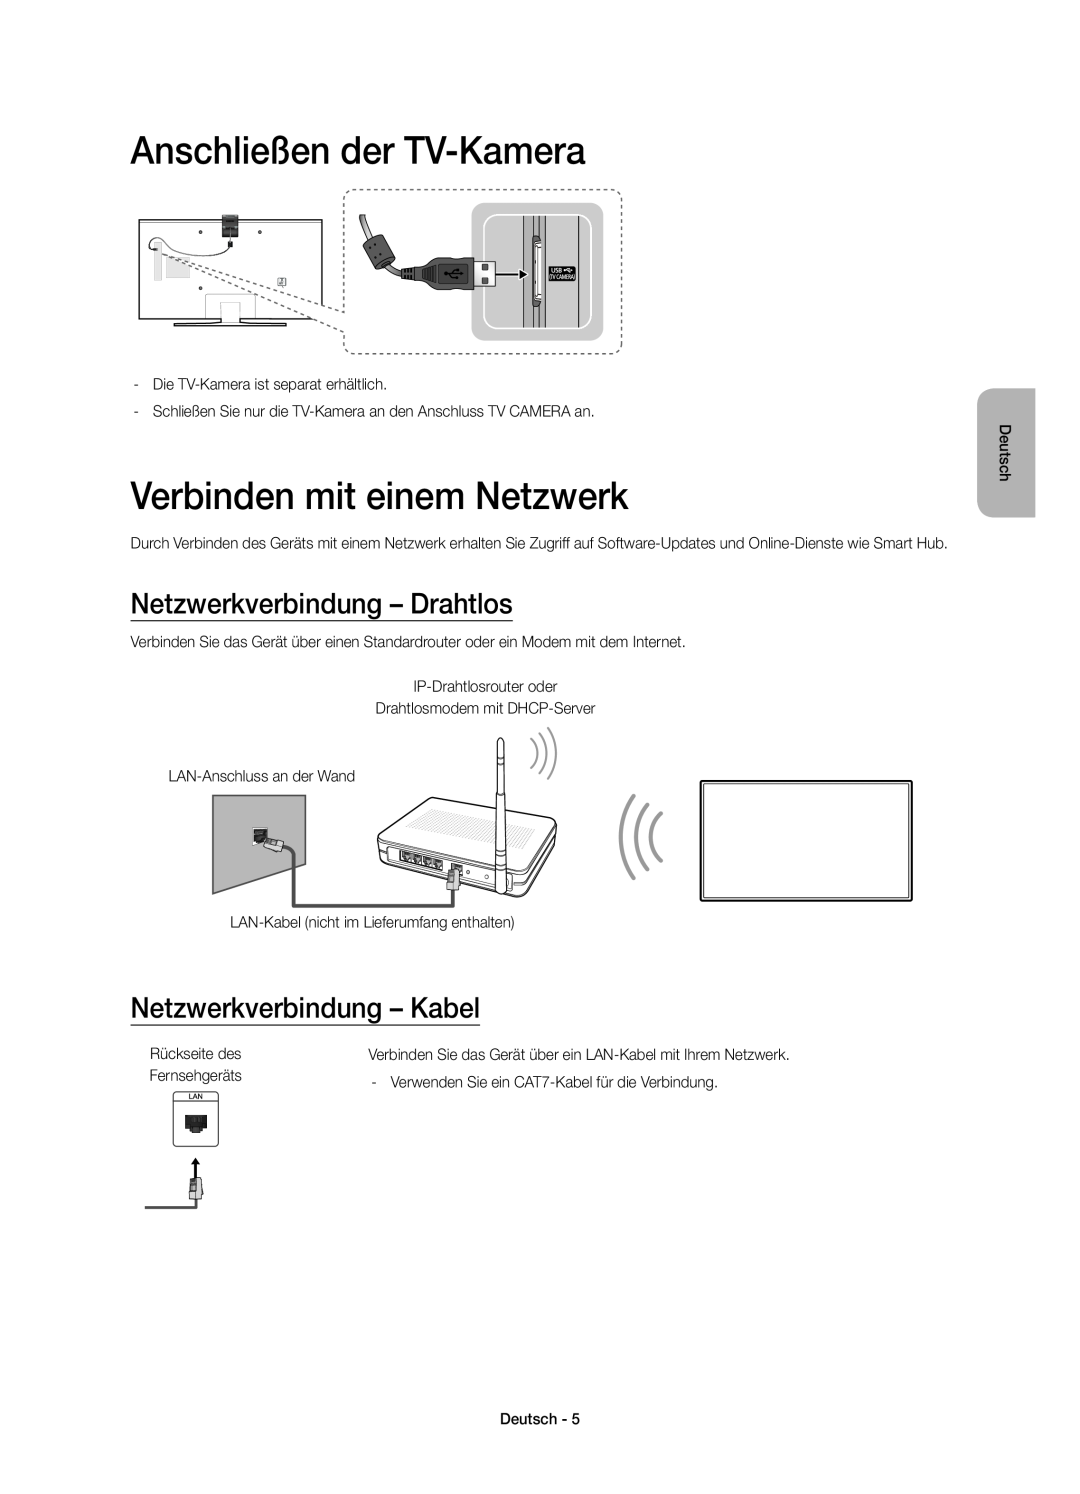 Samsung UE48JU6410SXXH manual Anschließen der TV-Kamera, Verbinden mit einem Netzwerk, Netzwerkverbindung - Drahtlos 